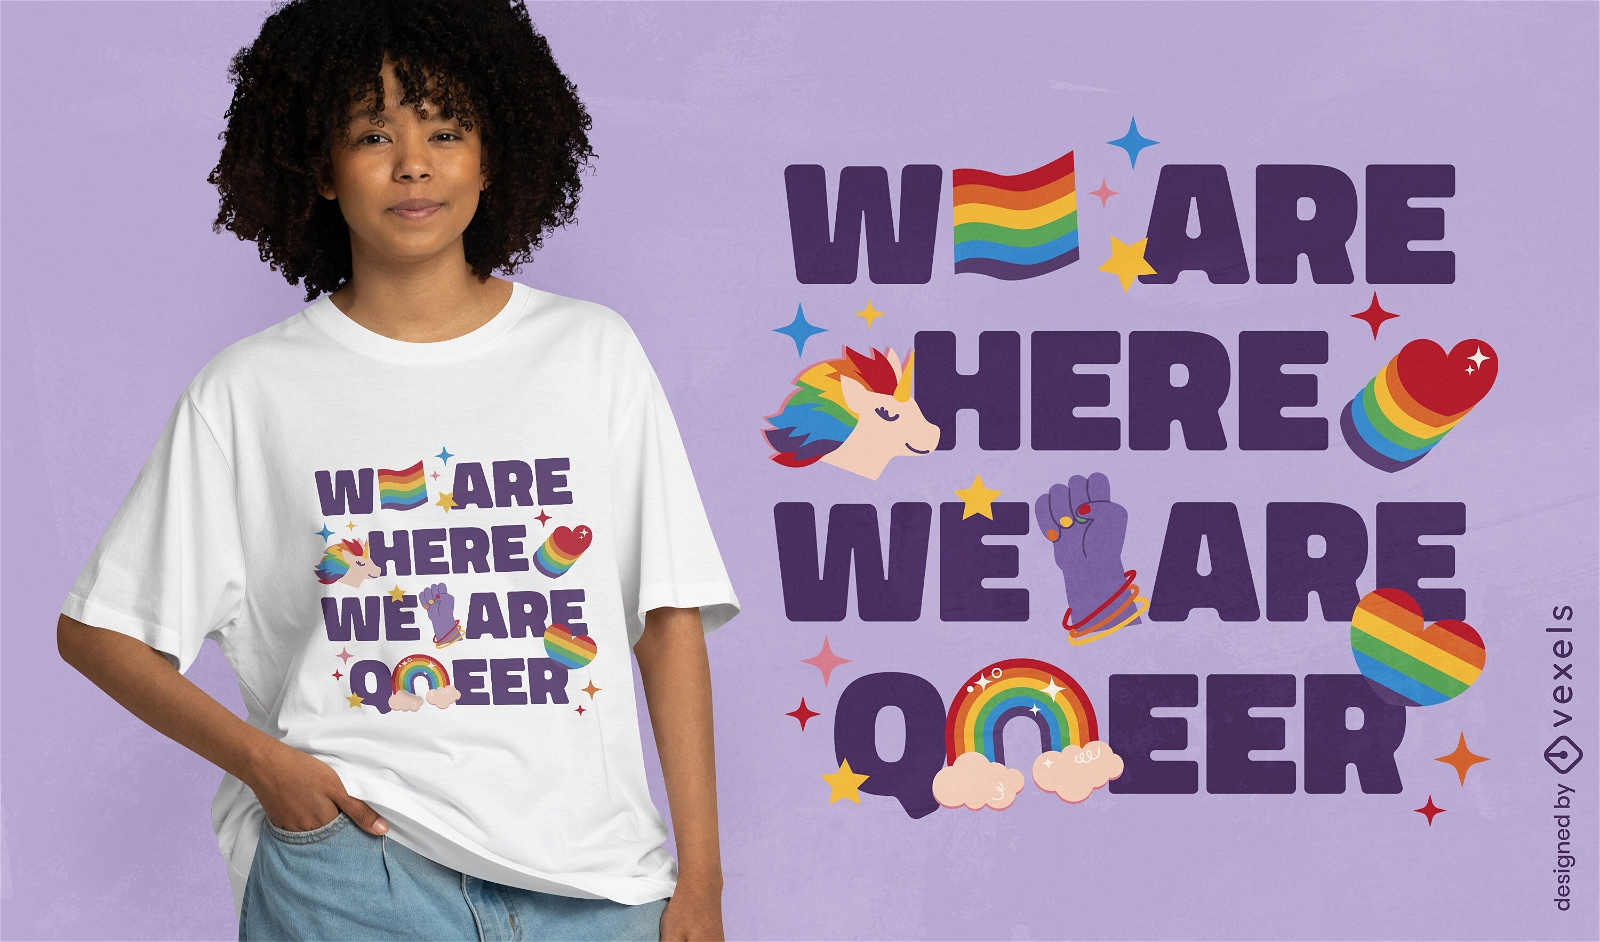 Queer rainbow quote t-shirt design